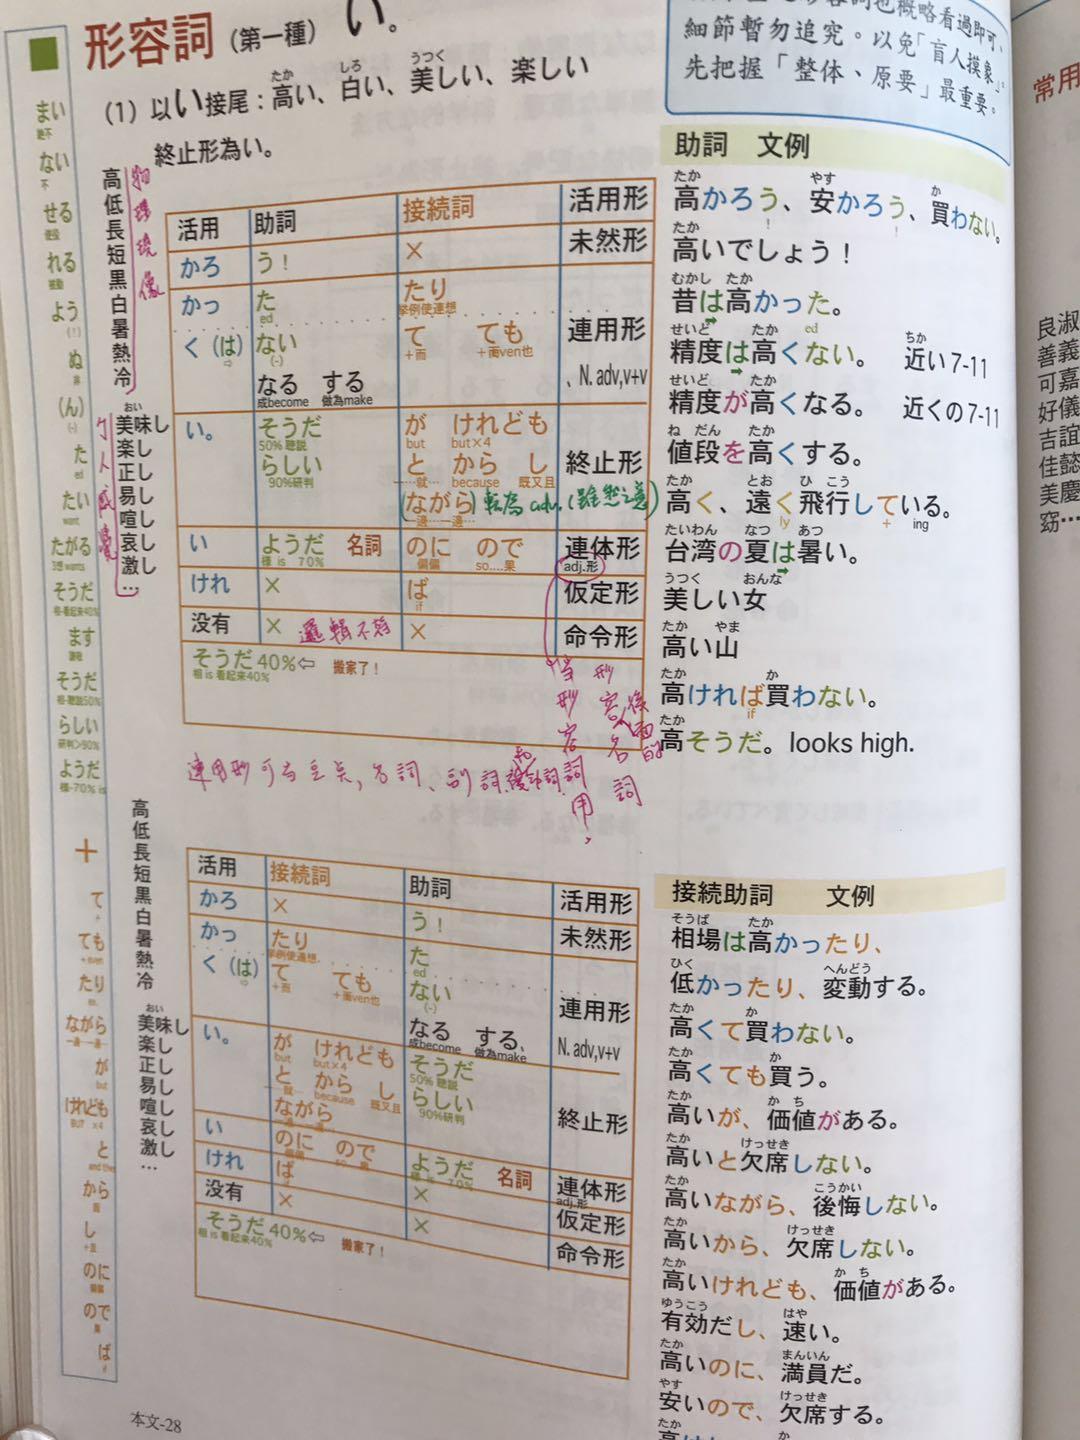 自学日语,从零基础到 JLPT N2 水平需要多久?